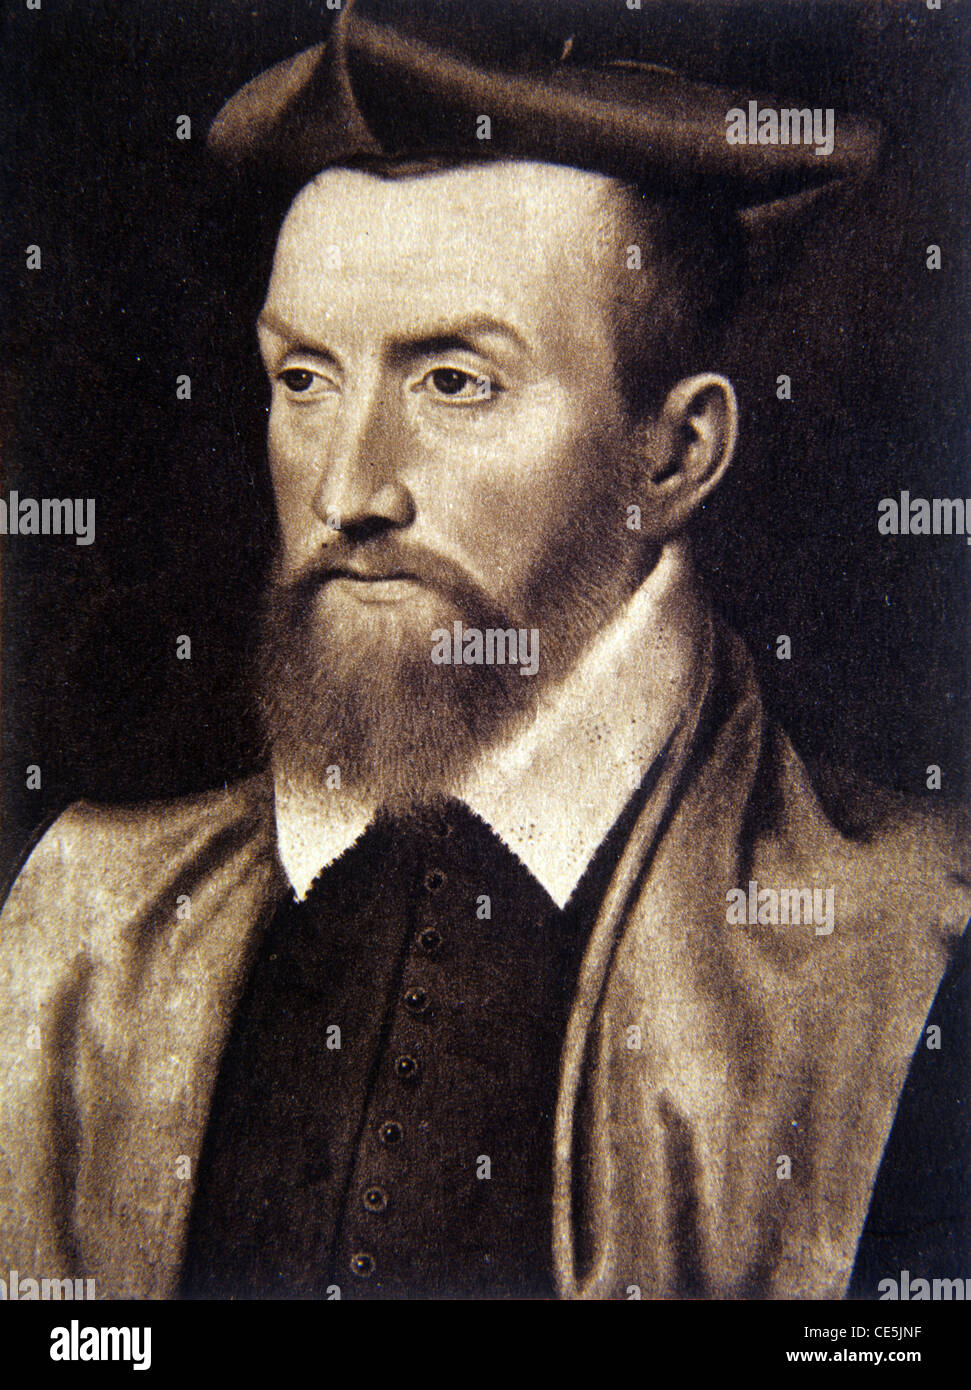 Gaspard de Coligny; (1519-1572) Almirante francés, noble y líder de hugonotes protestantes. Retrato. Foto de stock